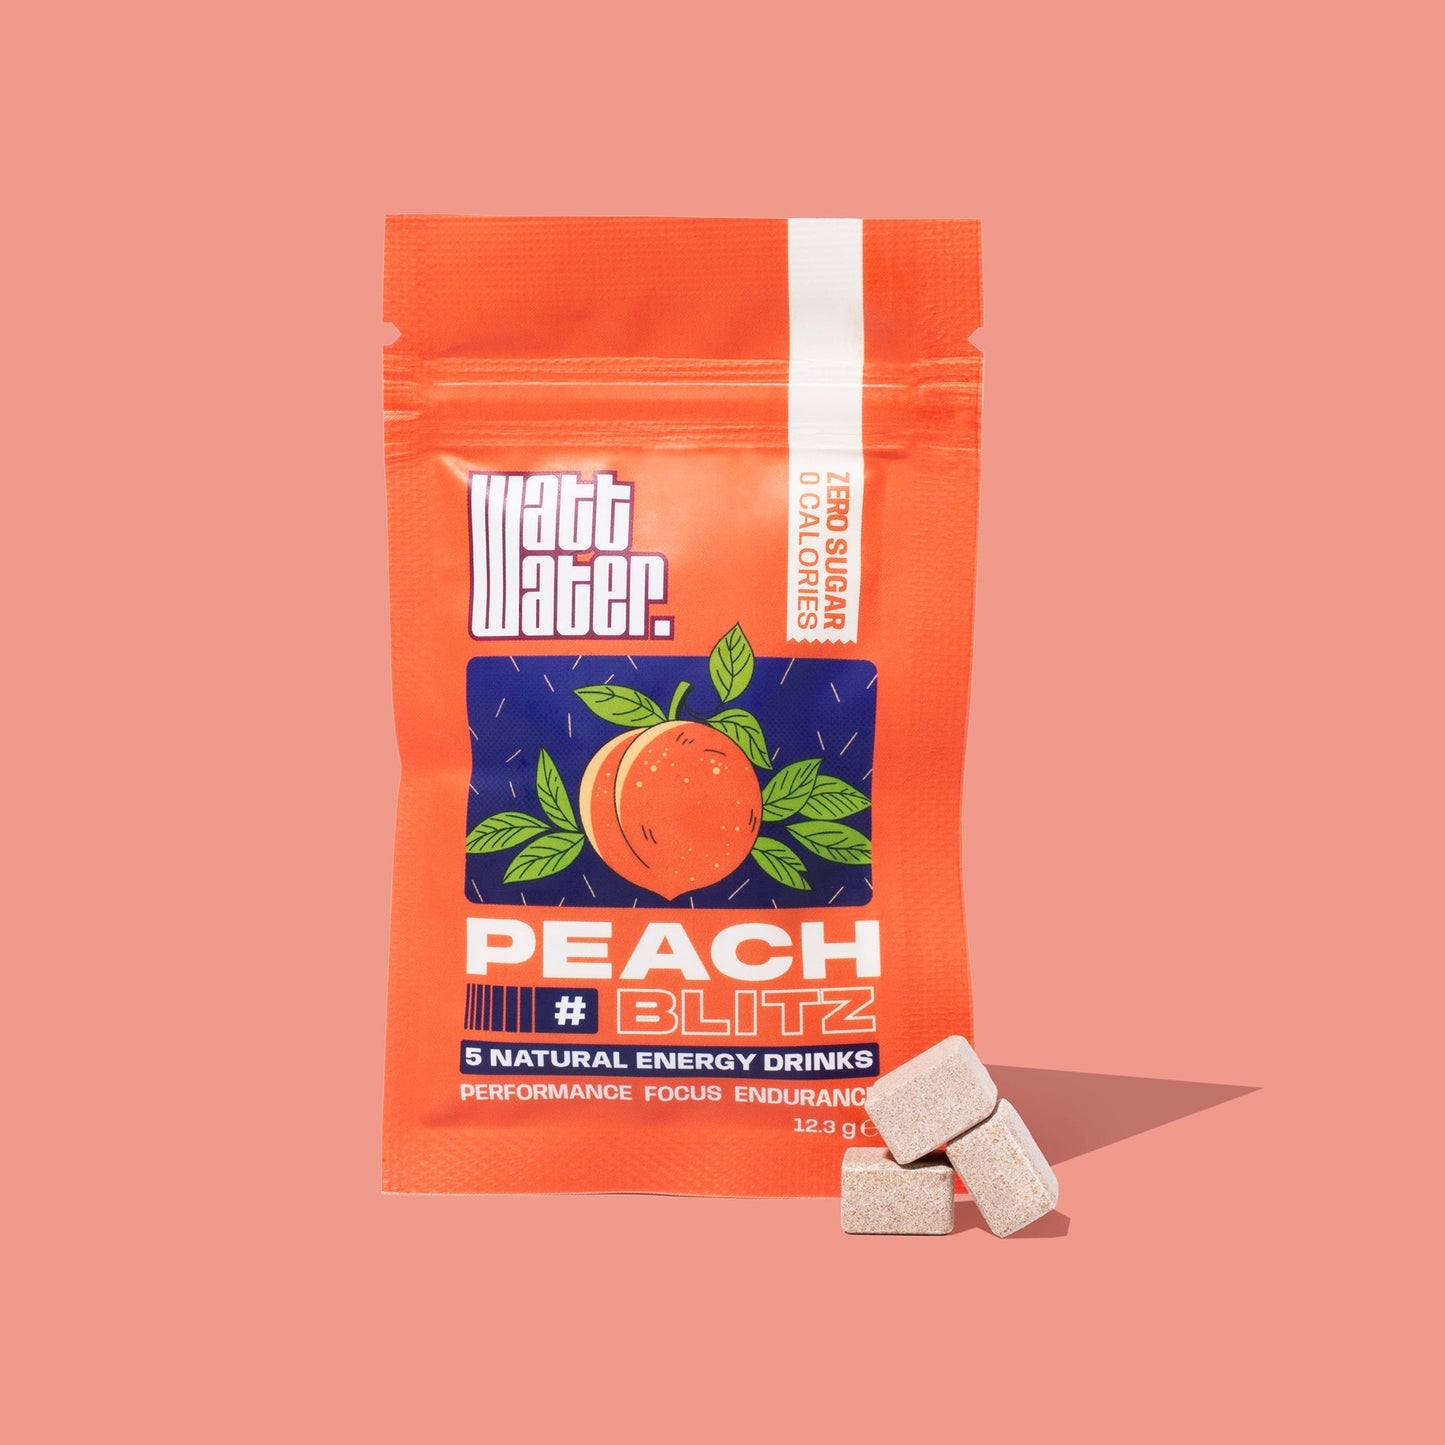 Peach blitz pack